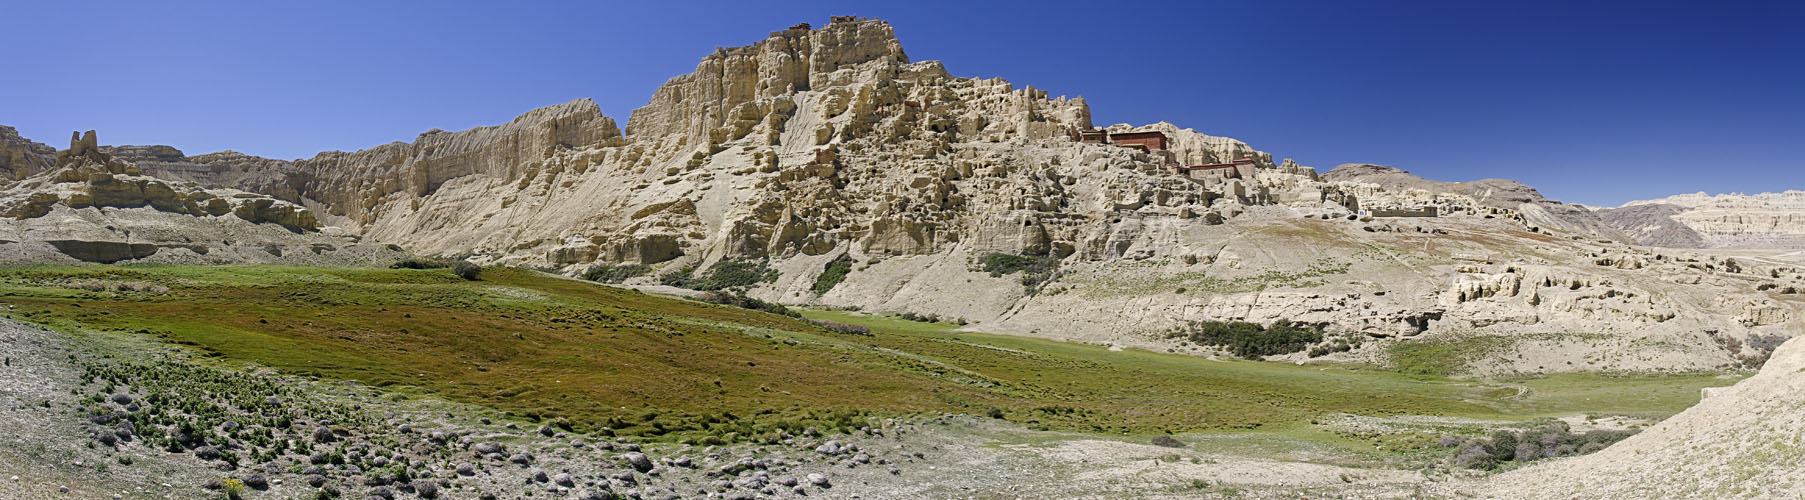 Tibetische Landschaften 10